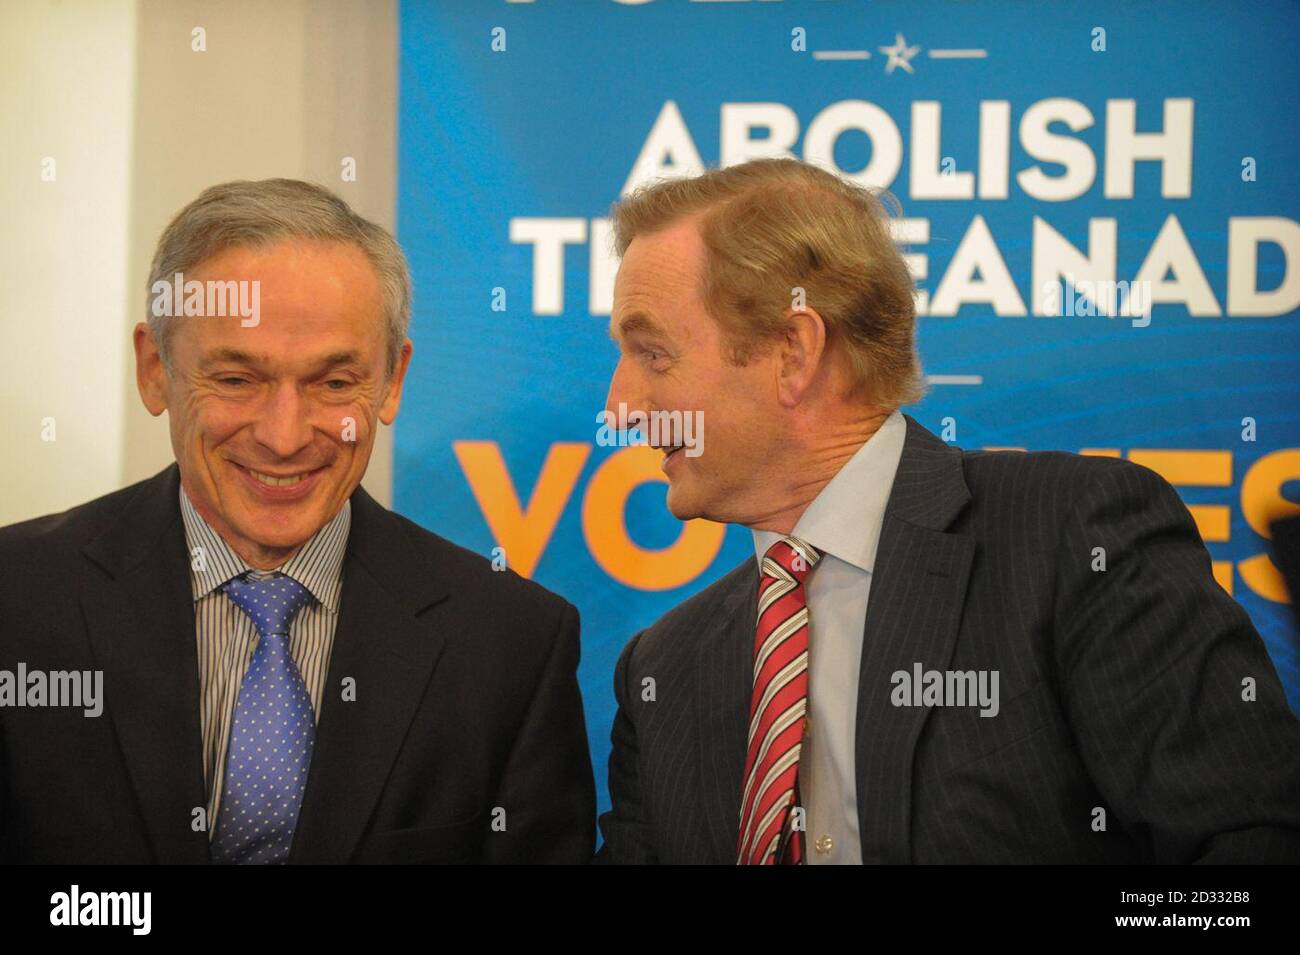 Richard Bruton y Taoiseach Enda Kenny en el lanzamiento de la campaña del Gobierno irlandés para abolir la Seanad en la Royal Hibernian Academy, Ely Place, Dublín. Foto de stock